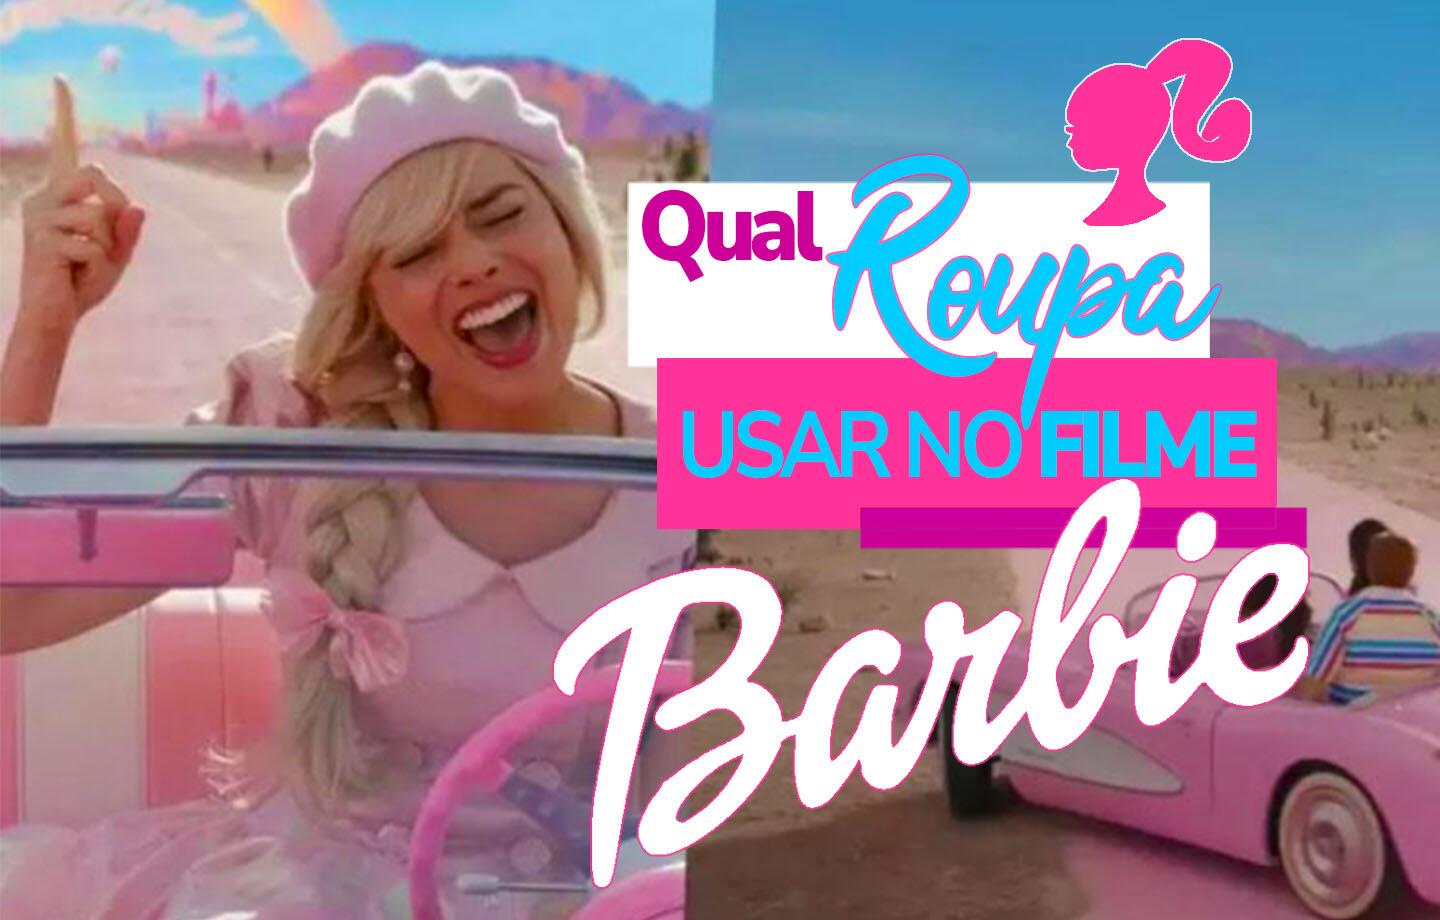 Barbie o Filme Roupa da Praia